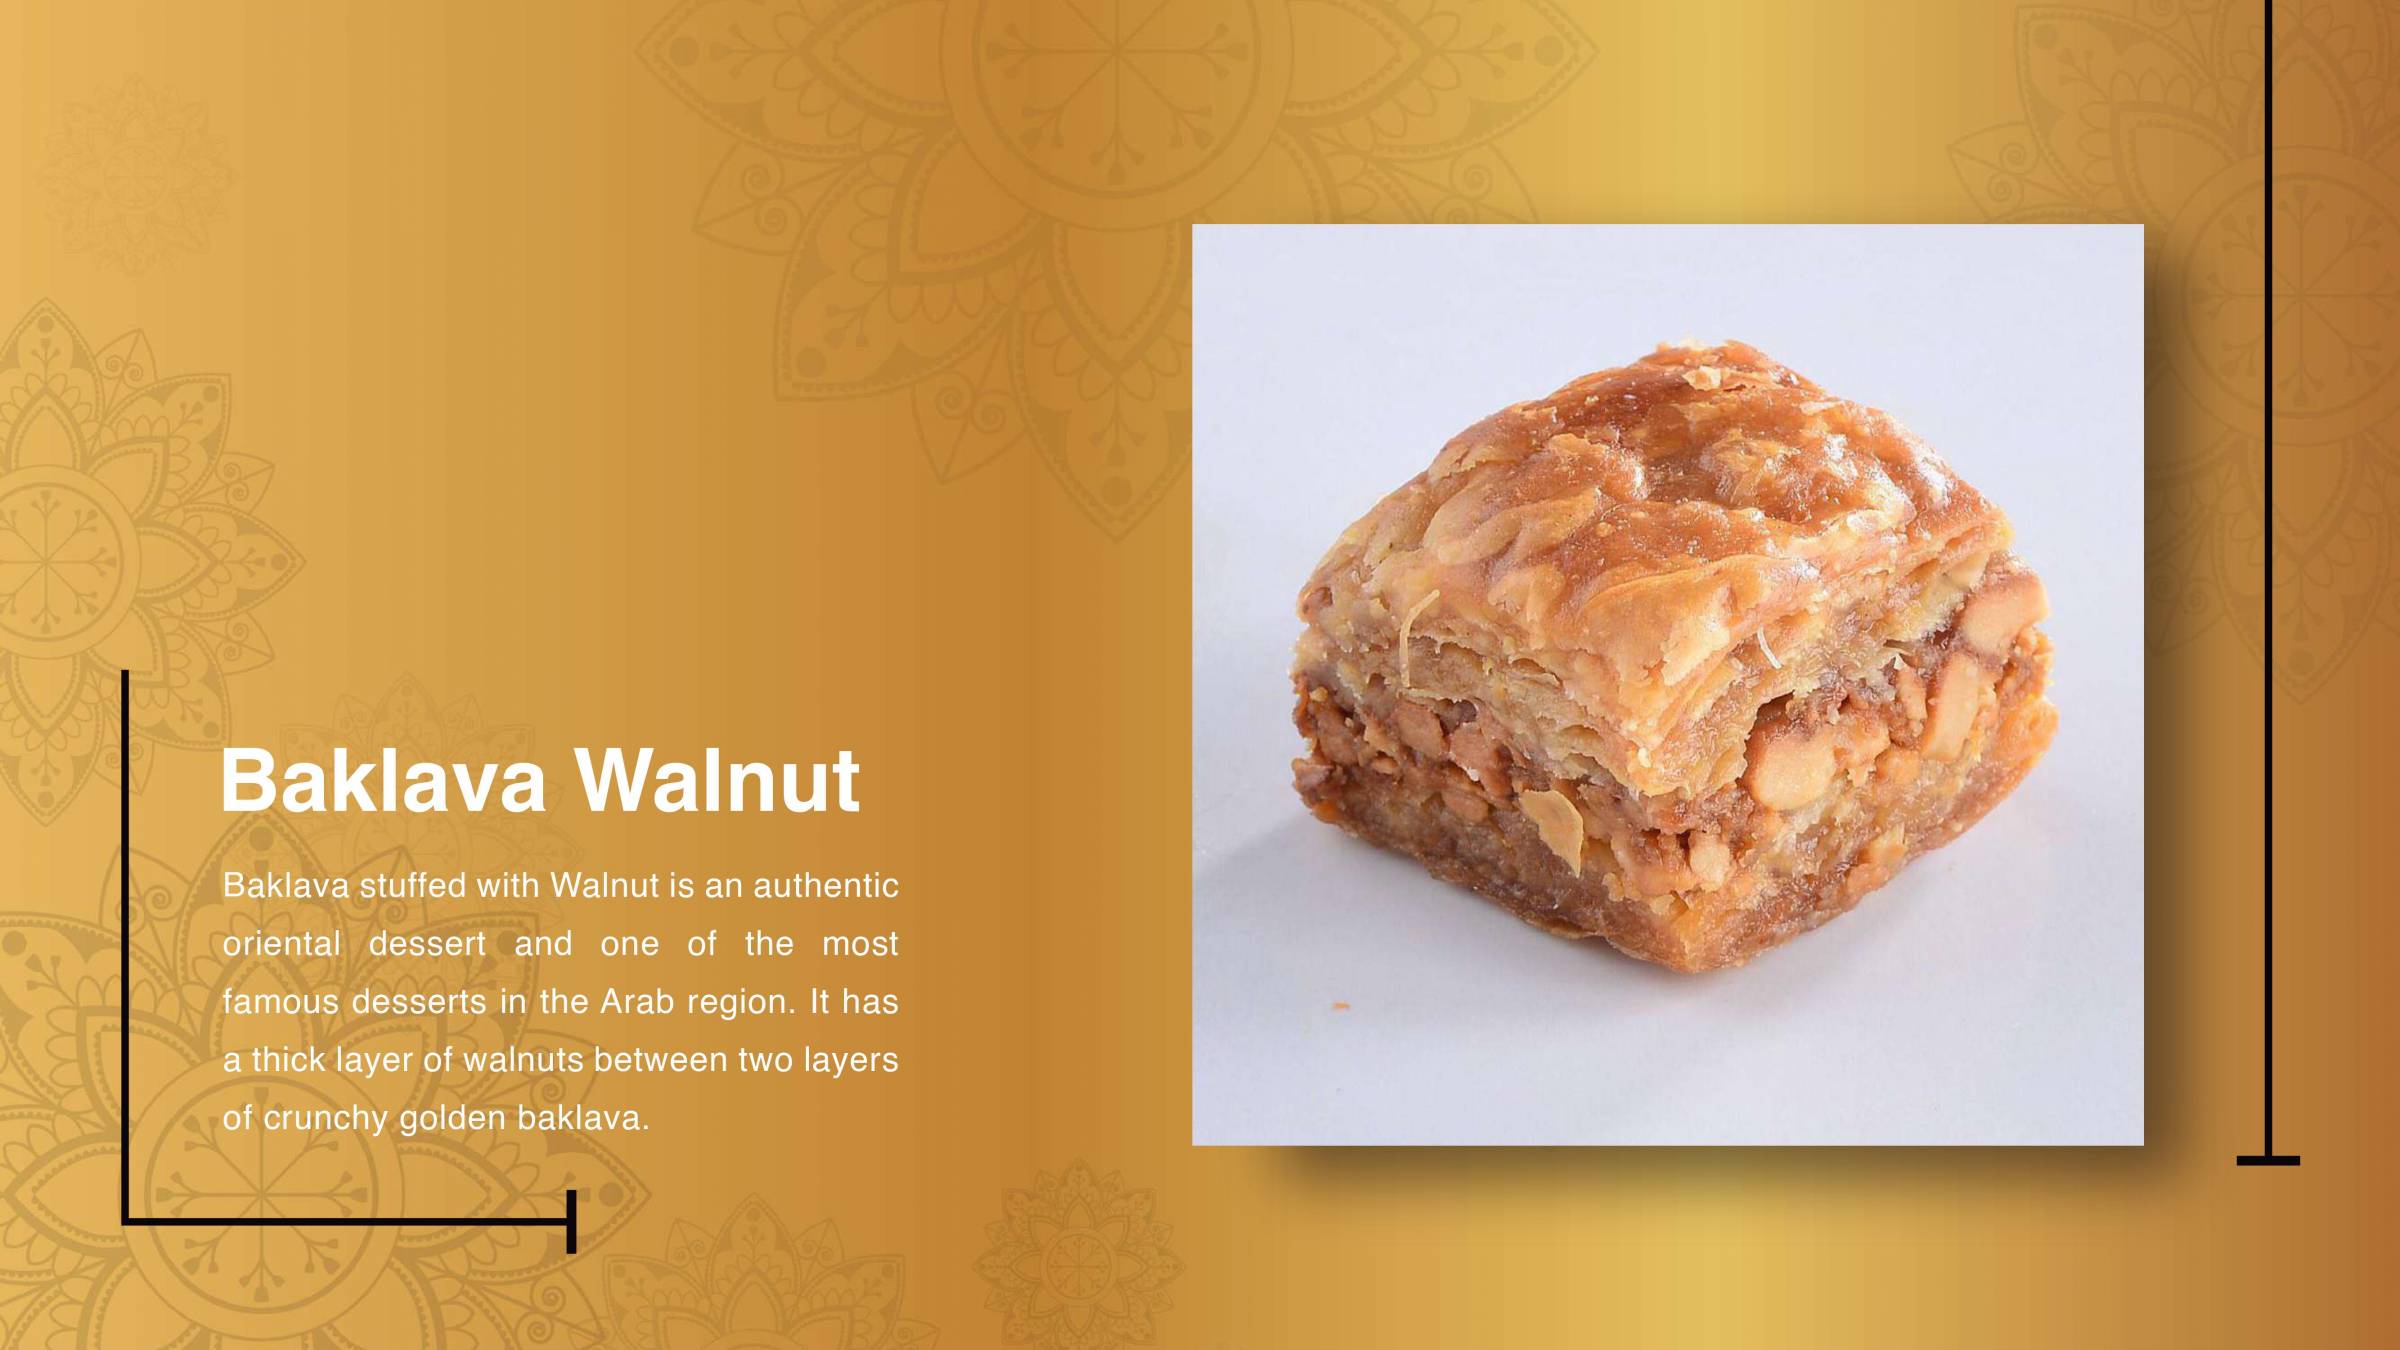 Baklava Walnut